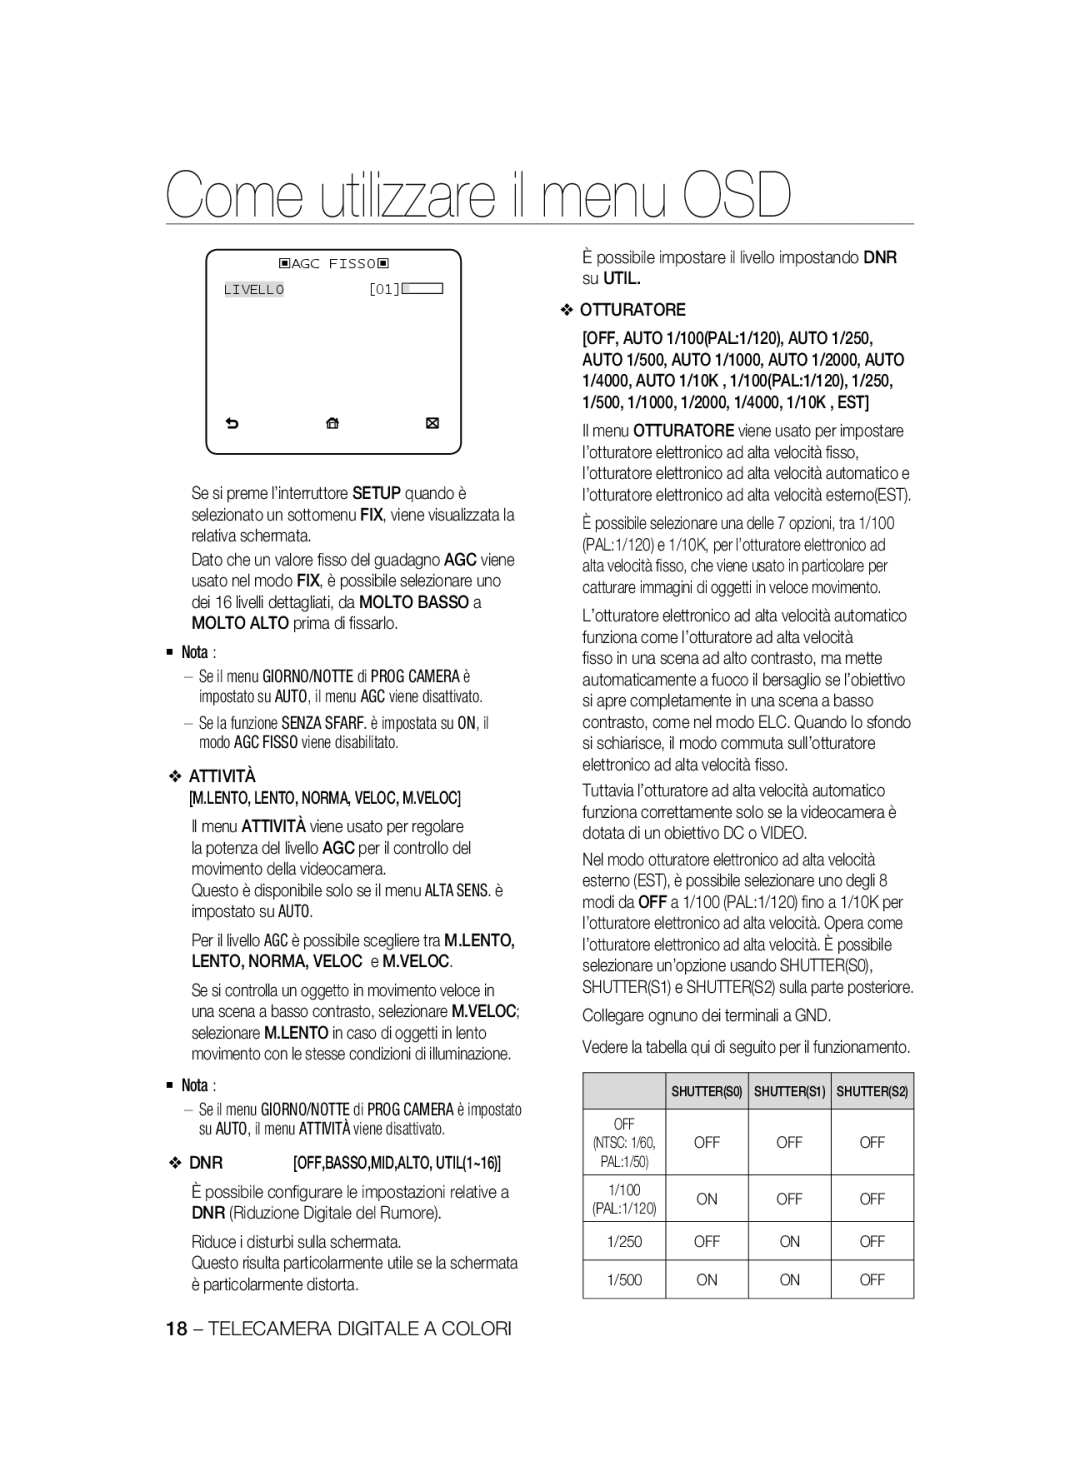 Samsung SCC-B2337P, SCC-B2037P manual Come utilizzare il menu OSD, ‹Agc Fisso‹ Livello 